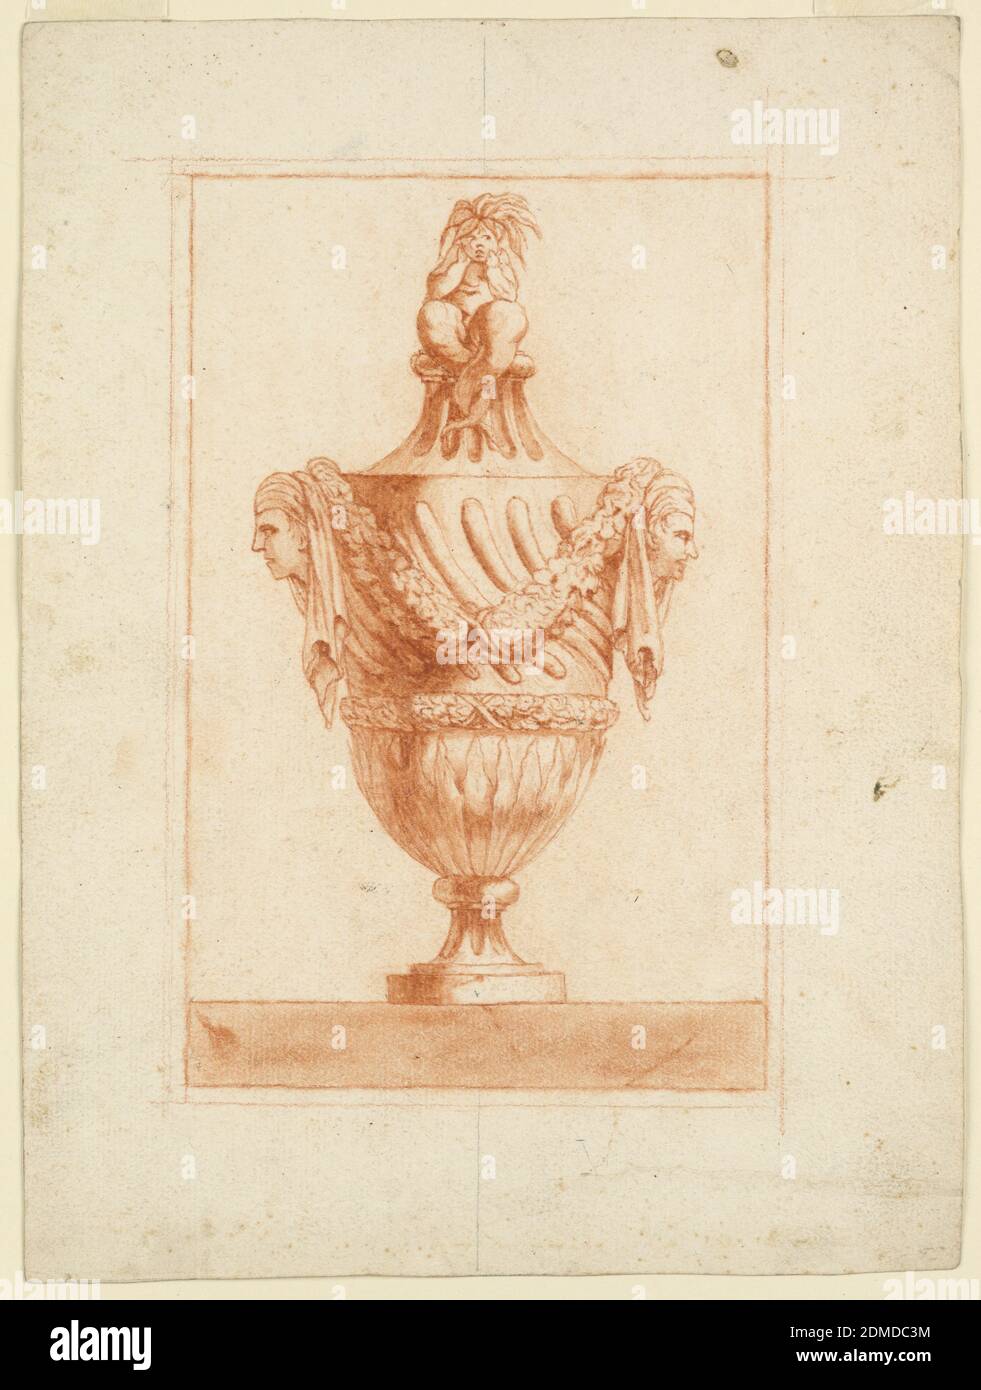 Design pour un vase, crayon rouge sur papier, élévation d'un vase décoré de deux masques et galopant en spirale. Au sommet, un puto de mer contemplatif. Vase sur un sol en marbre fissuré., Europe, 1730–1760, classicisme, dessin Banque D'Images